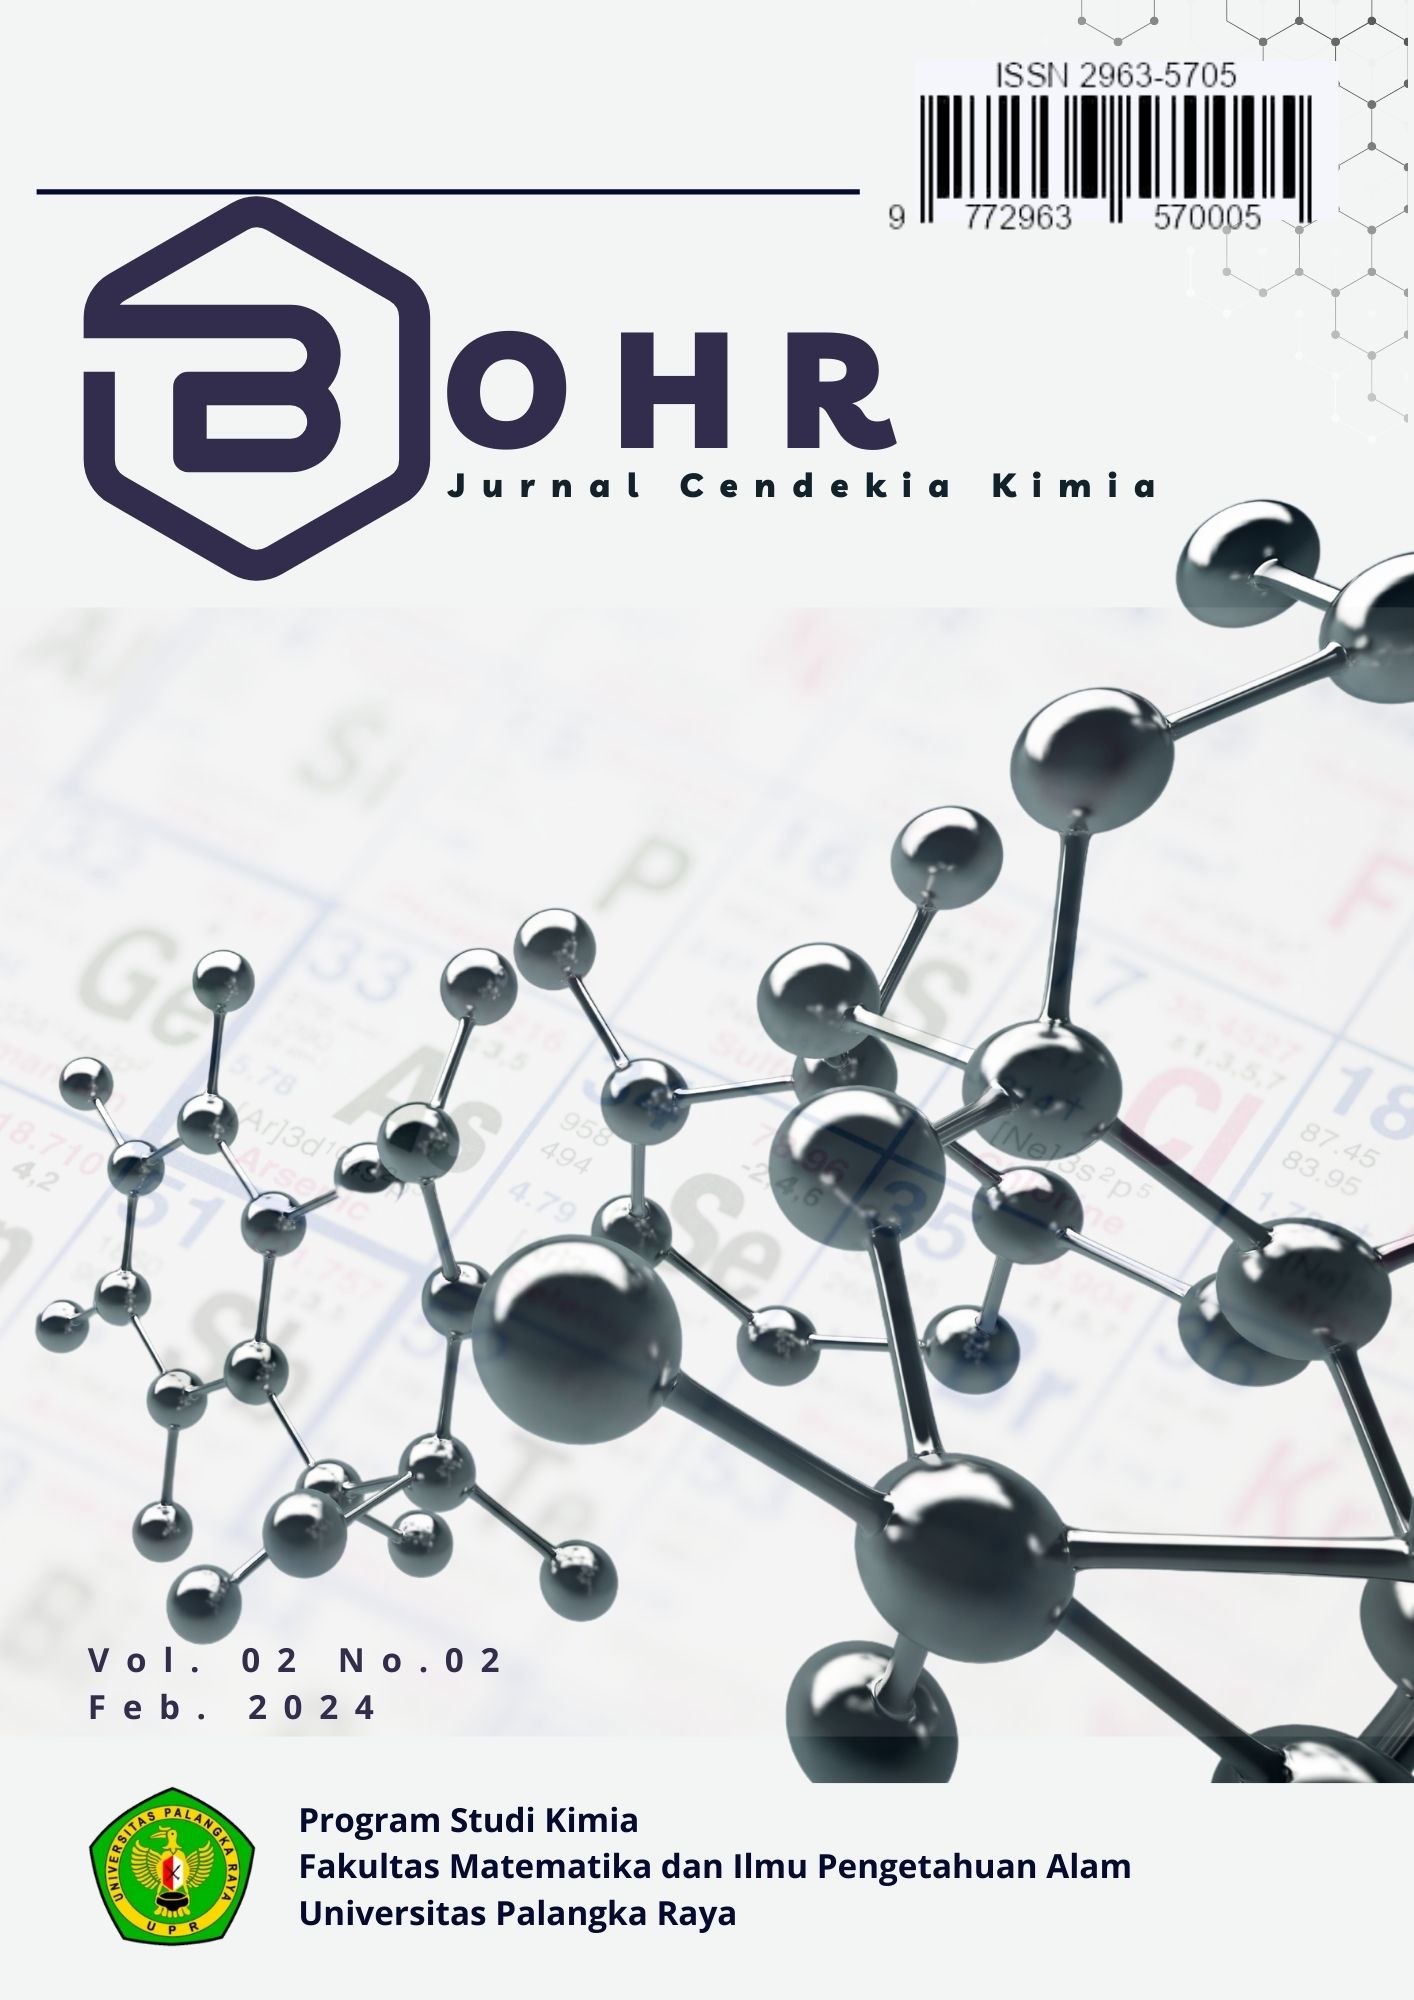 					Lihat Vol 2 No 02 (2024): Bohr: Jurnal Cendekia Kimia Vol 02 No 02
				